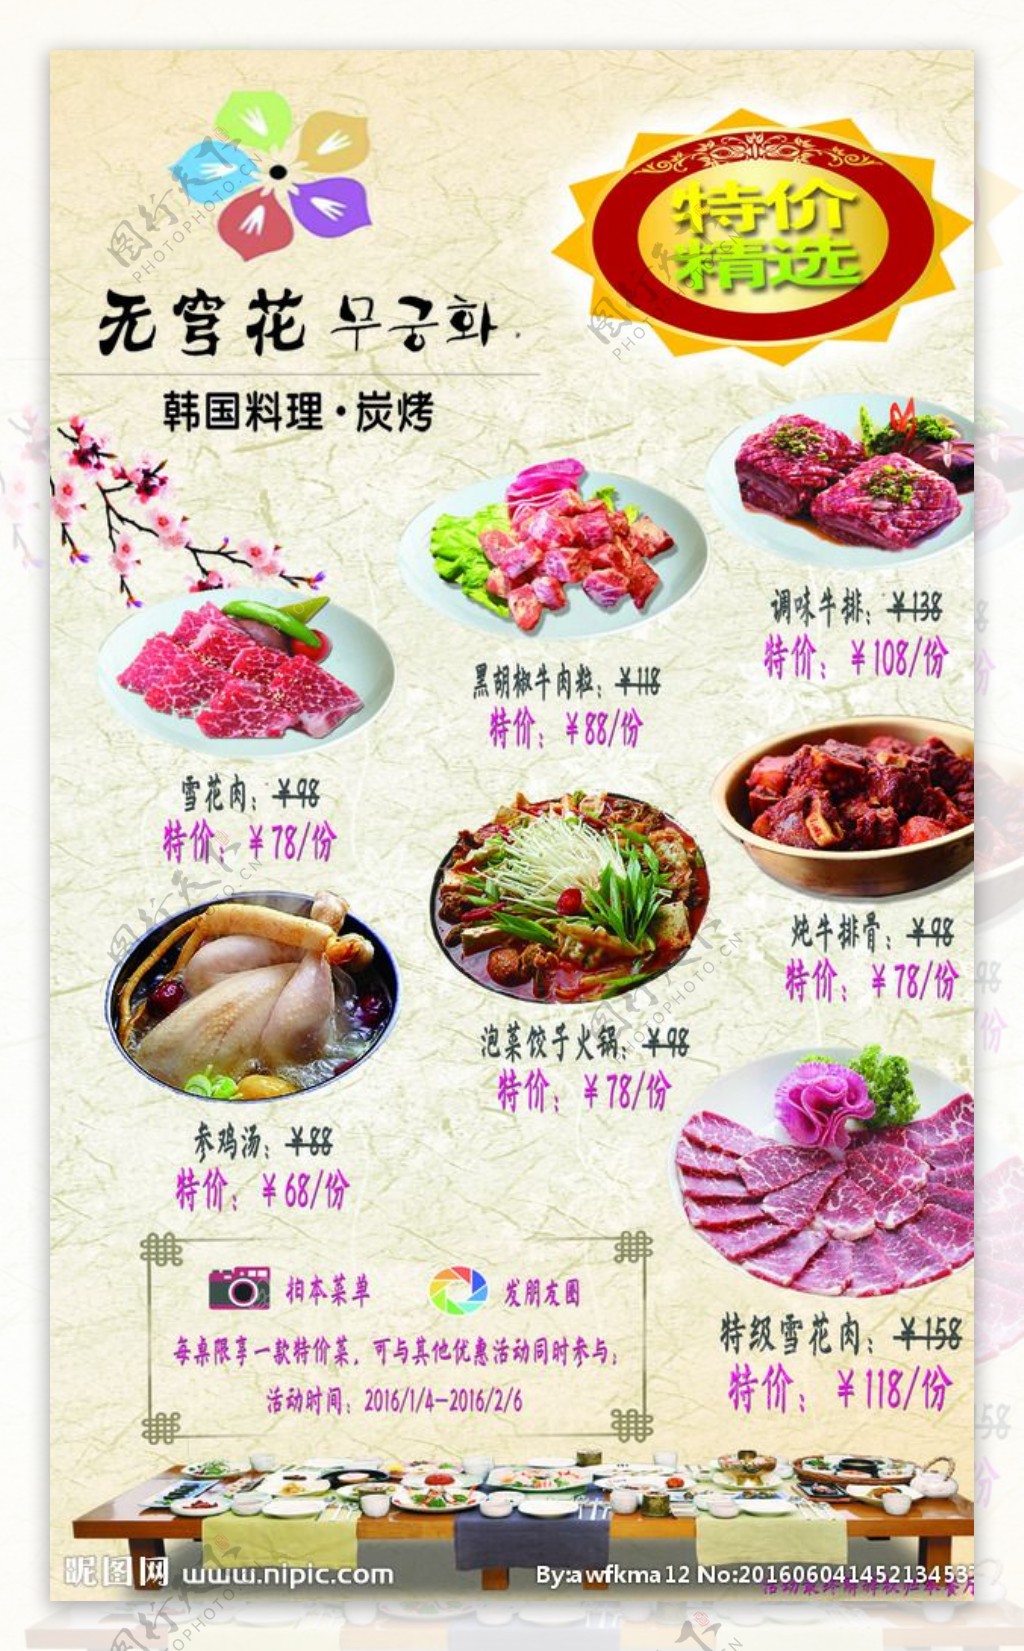 特价菜韩国料理